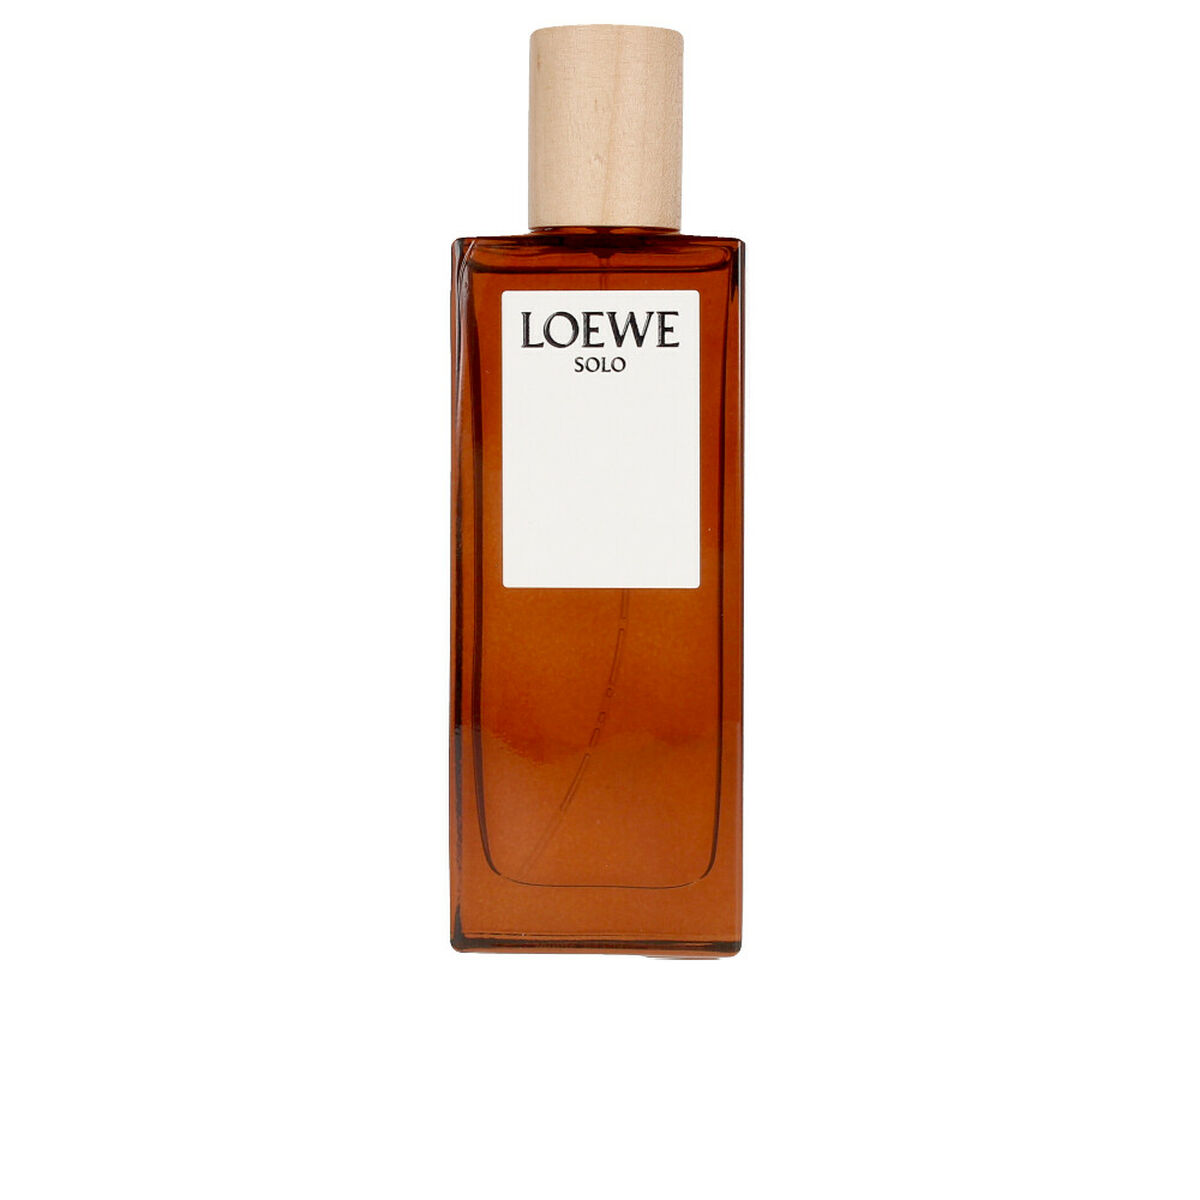 Osta tuote Miesten parfyymi Loewe Solo EDT verkkokaupastamme Korhone: Parfyymit & Kosmetiikka 10% alennuksella koodilla KORHONE